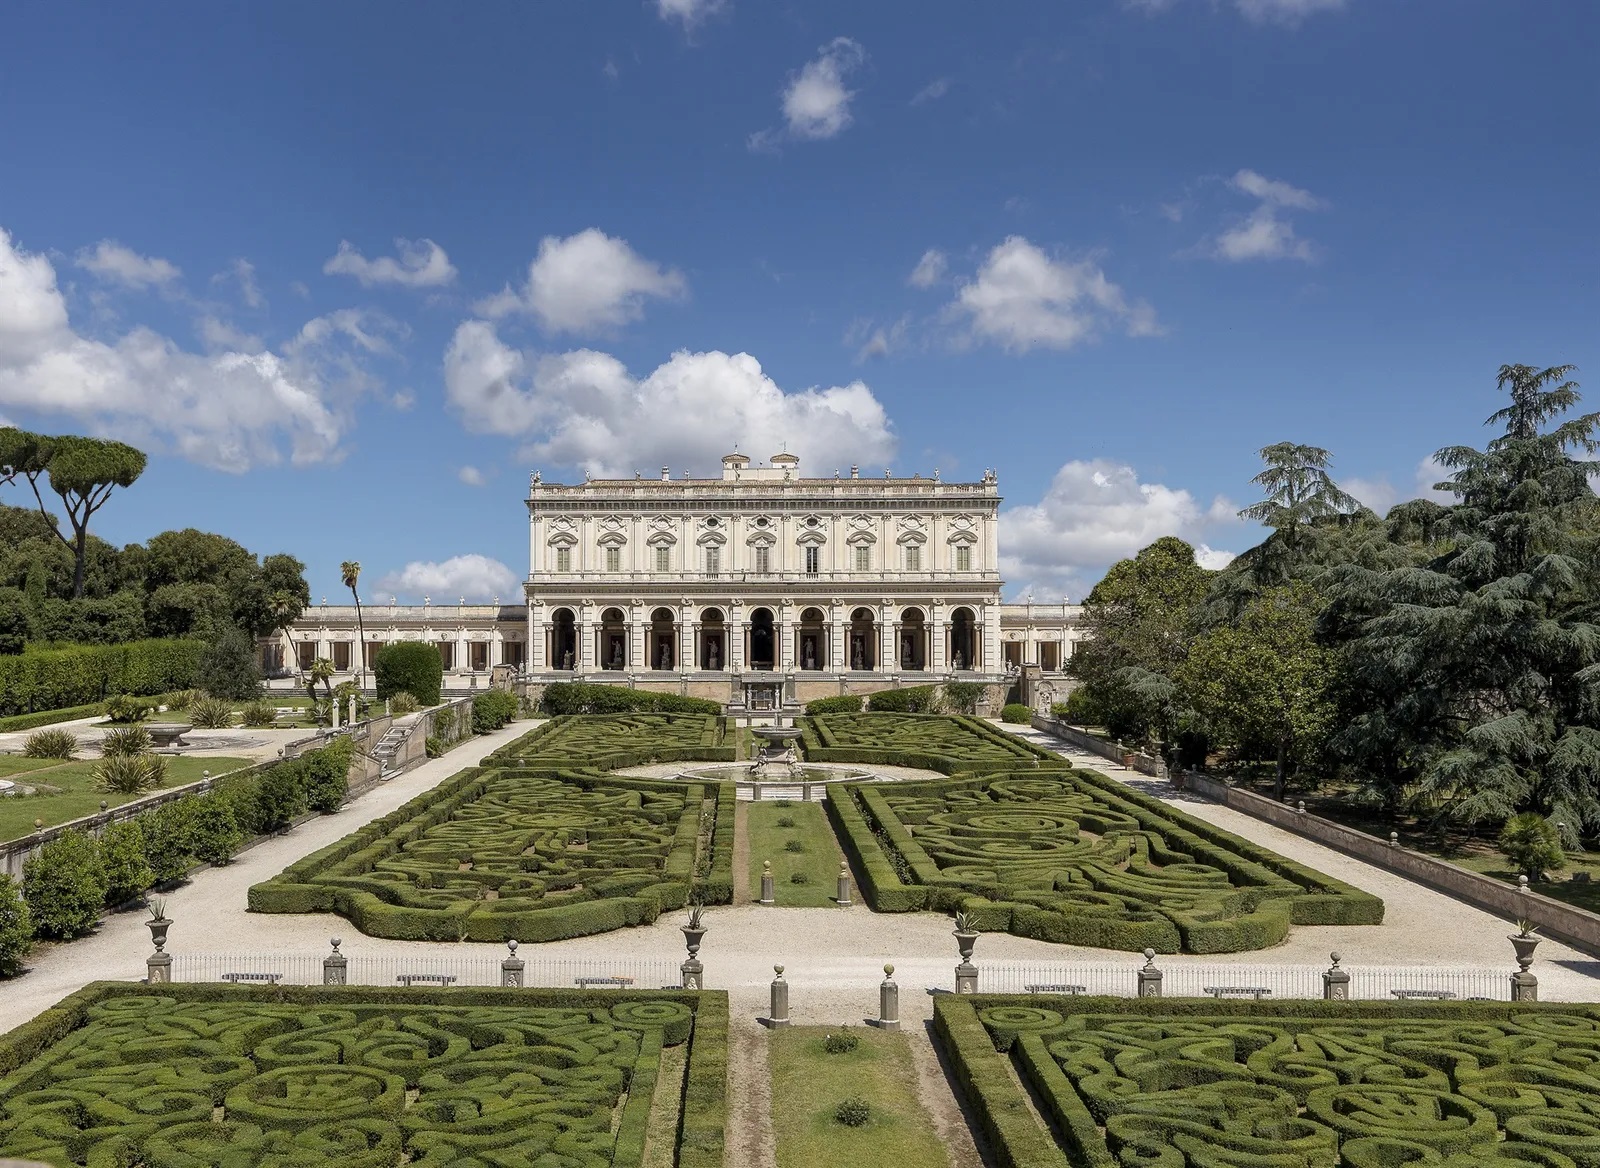 The Torlonia Foundation in Rome opens the antiquarium of Villa Albani to the public 27